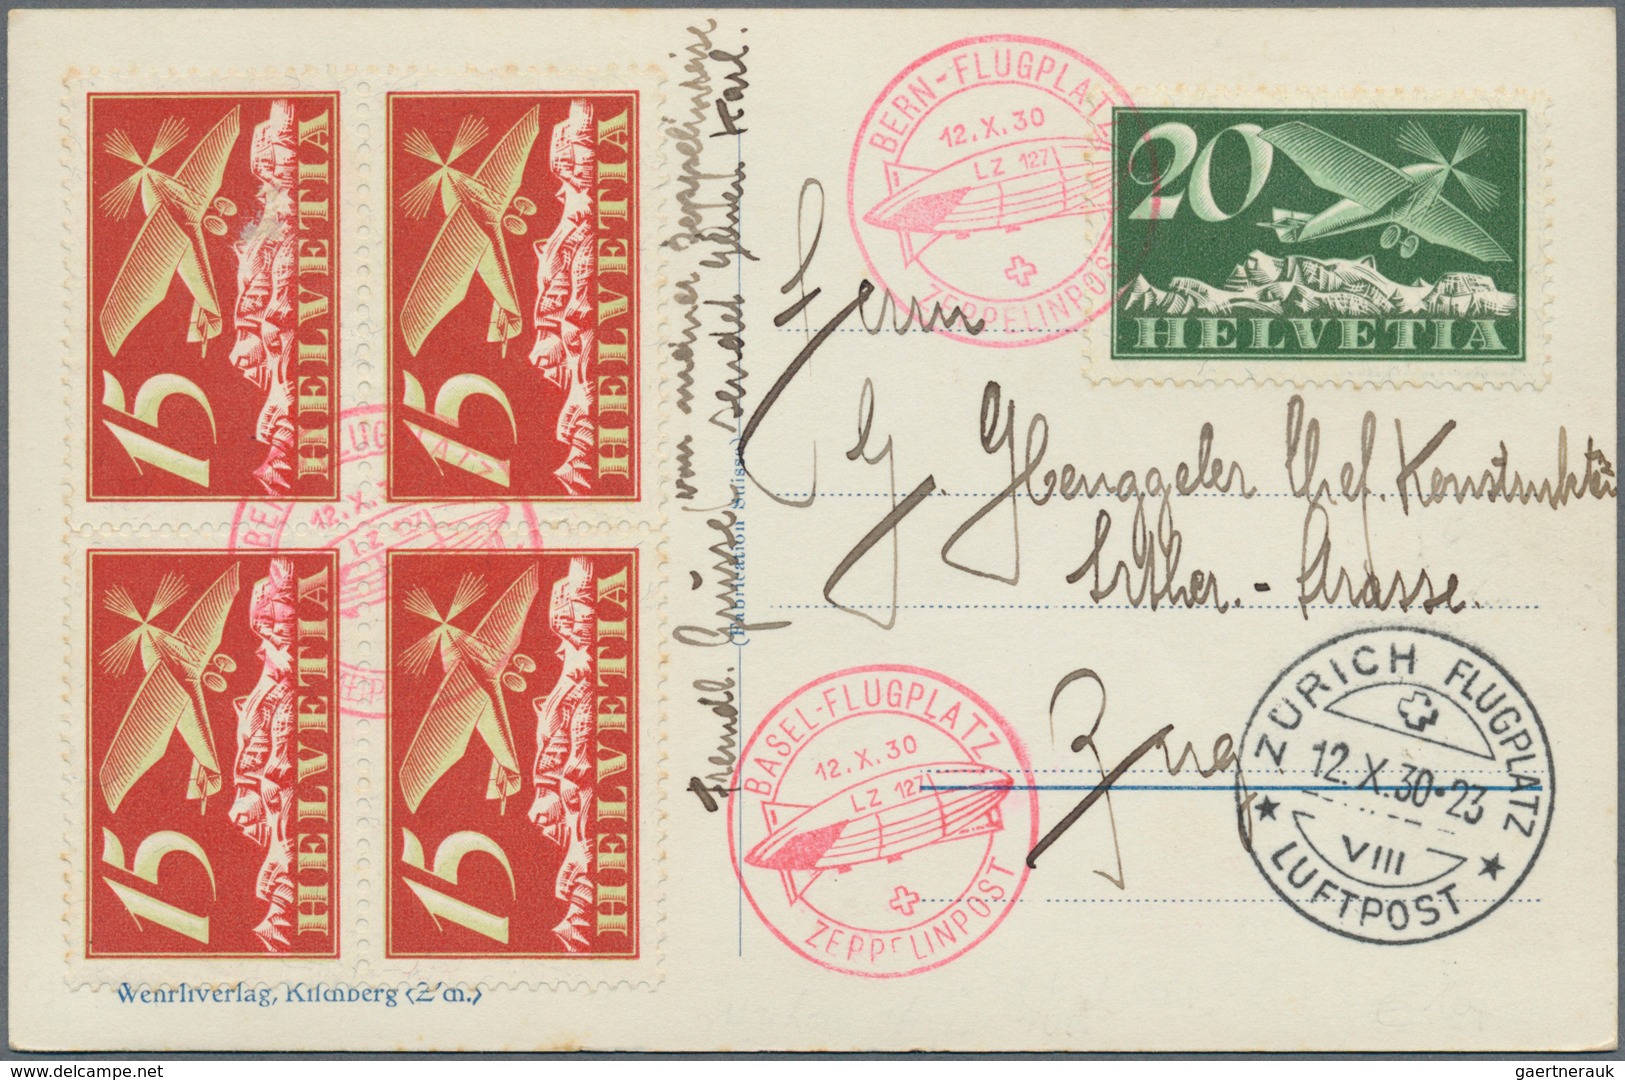 Schweiz: 1913-Modern, FLUGPOST: Umfangreiche Sammlung der Flugpostmarken (meist postfrisch bzw. anfa